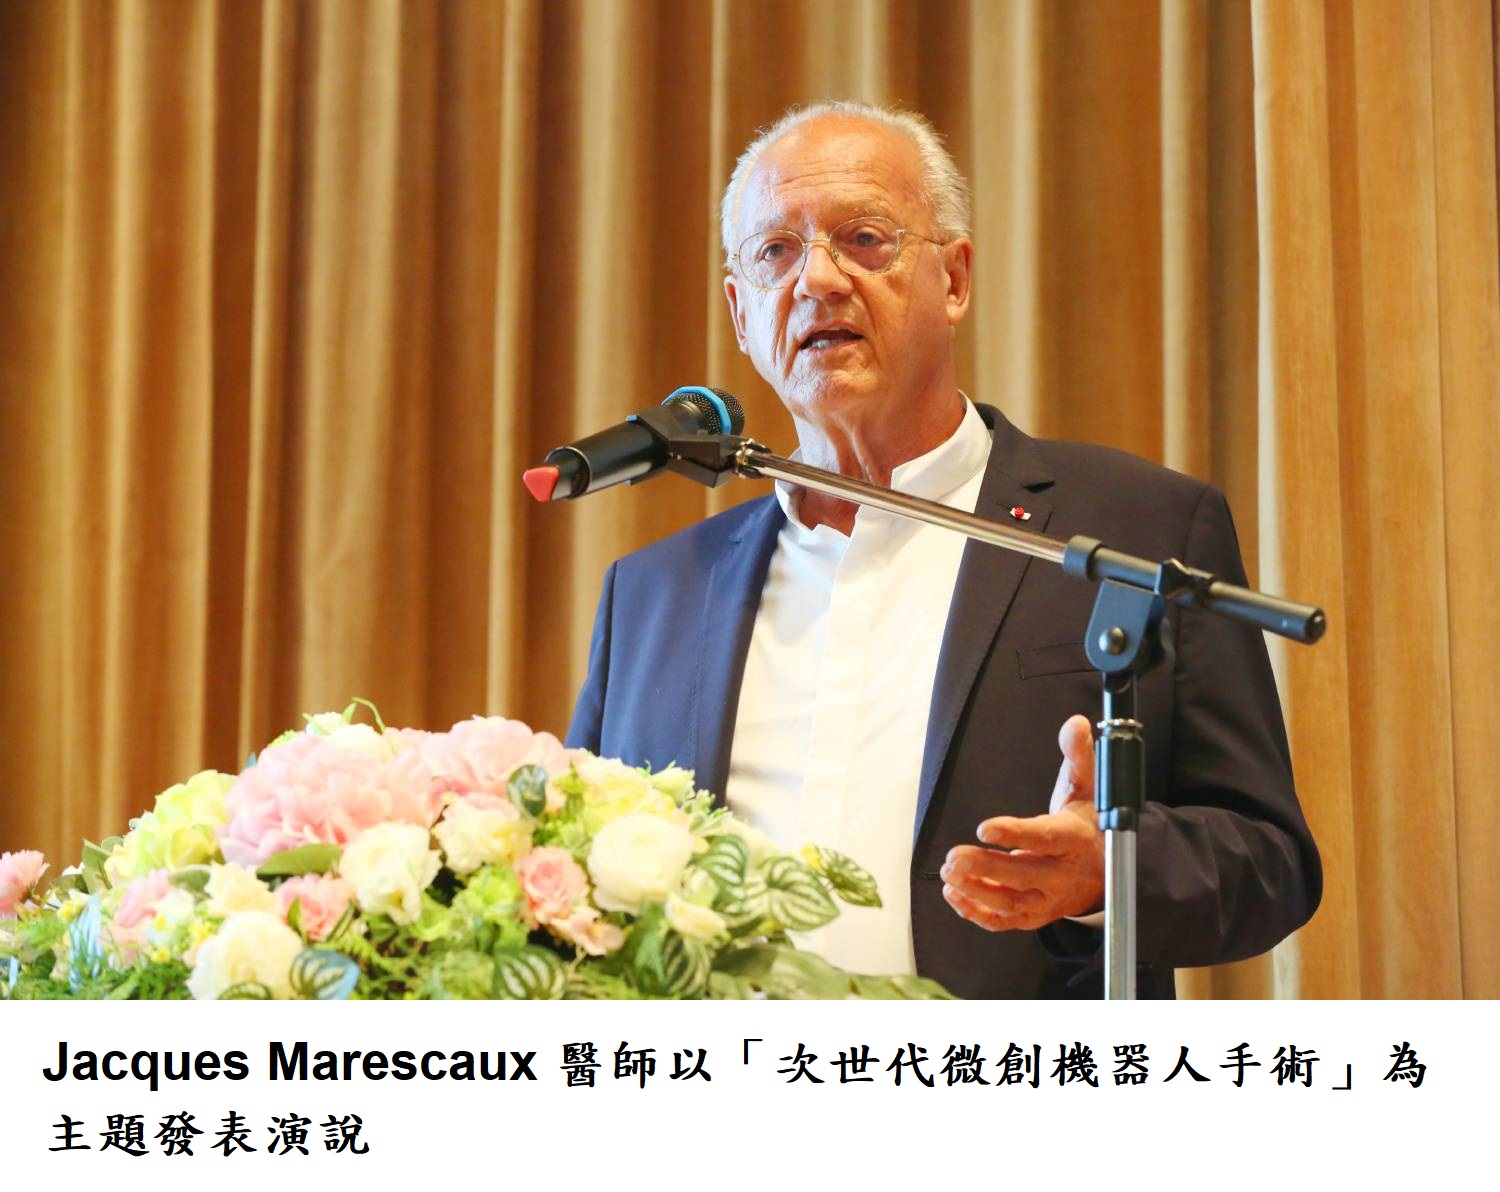 Jacques Marescaux 醫師以「次世代微創機器人手術」為主題發表演說。